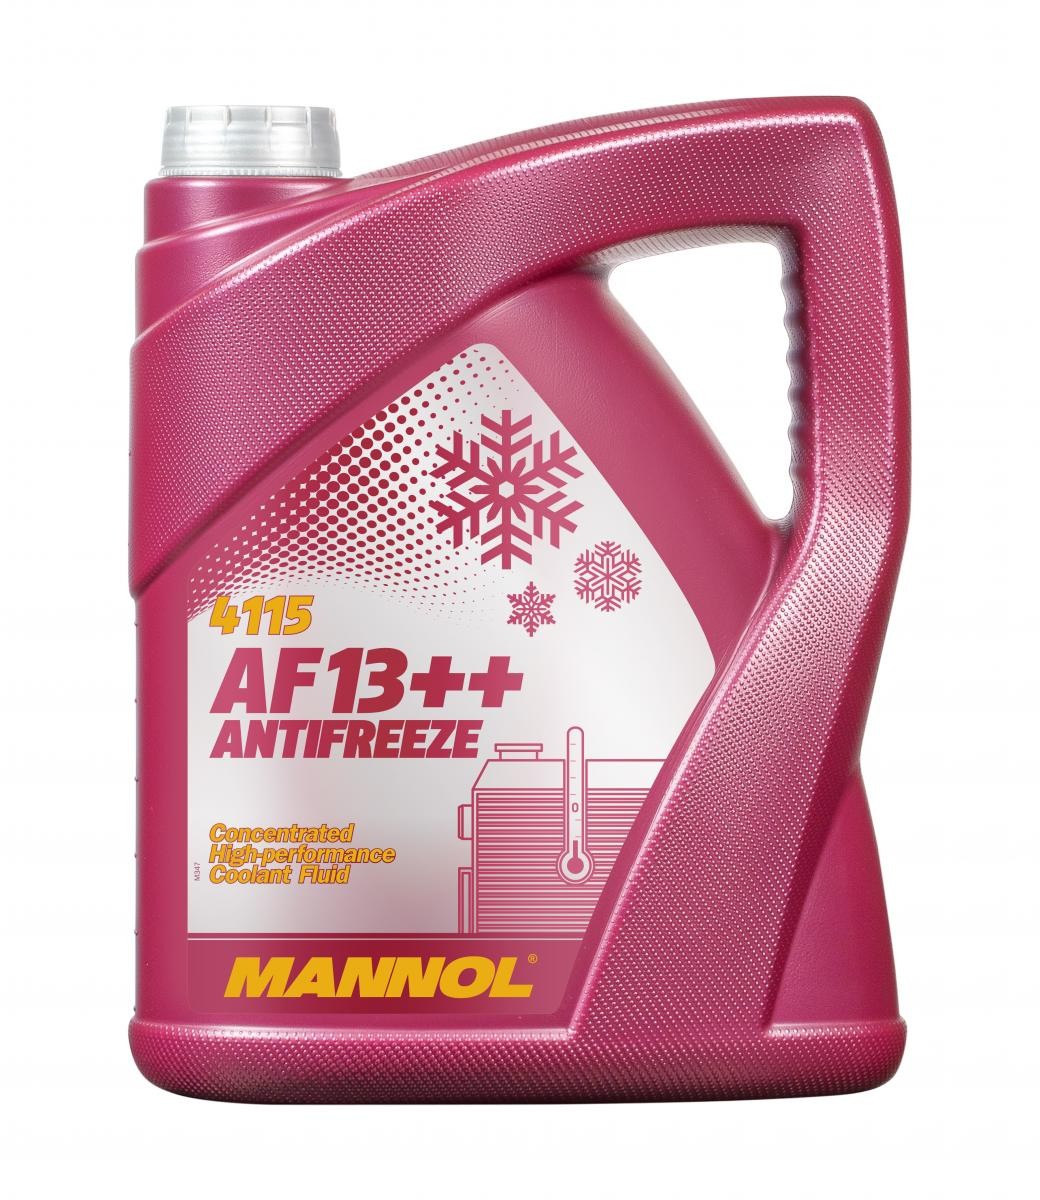 Naročite MN4115-5 MANNOL Sredstvo proti zmrzovanju hladilne vode (antifriz) zdaj